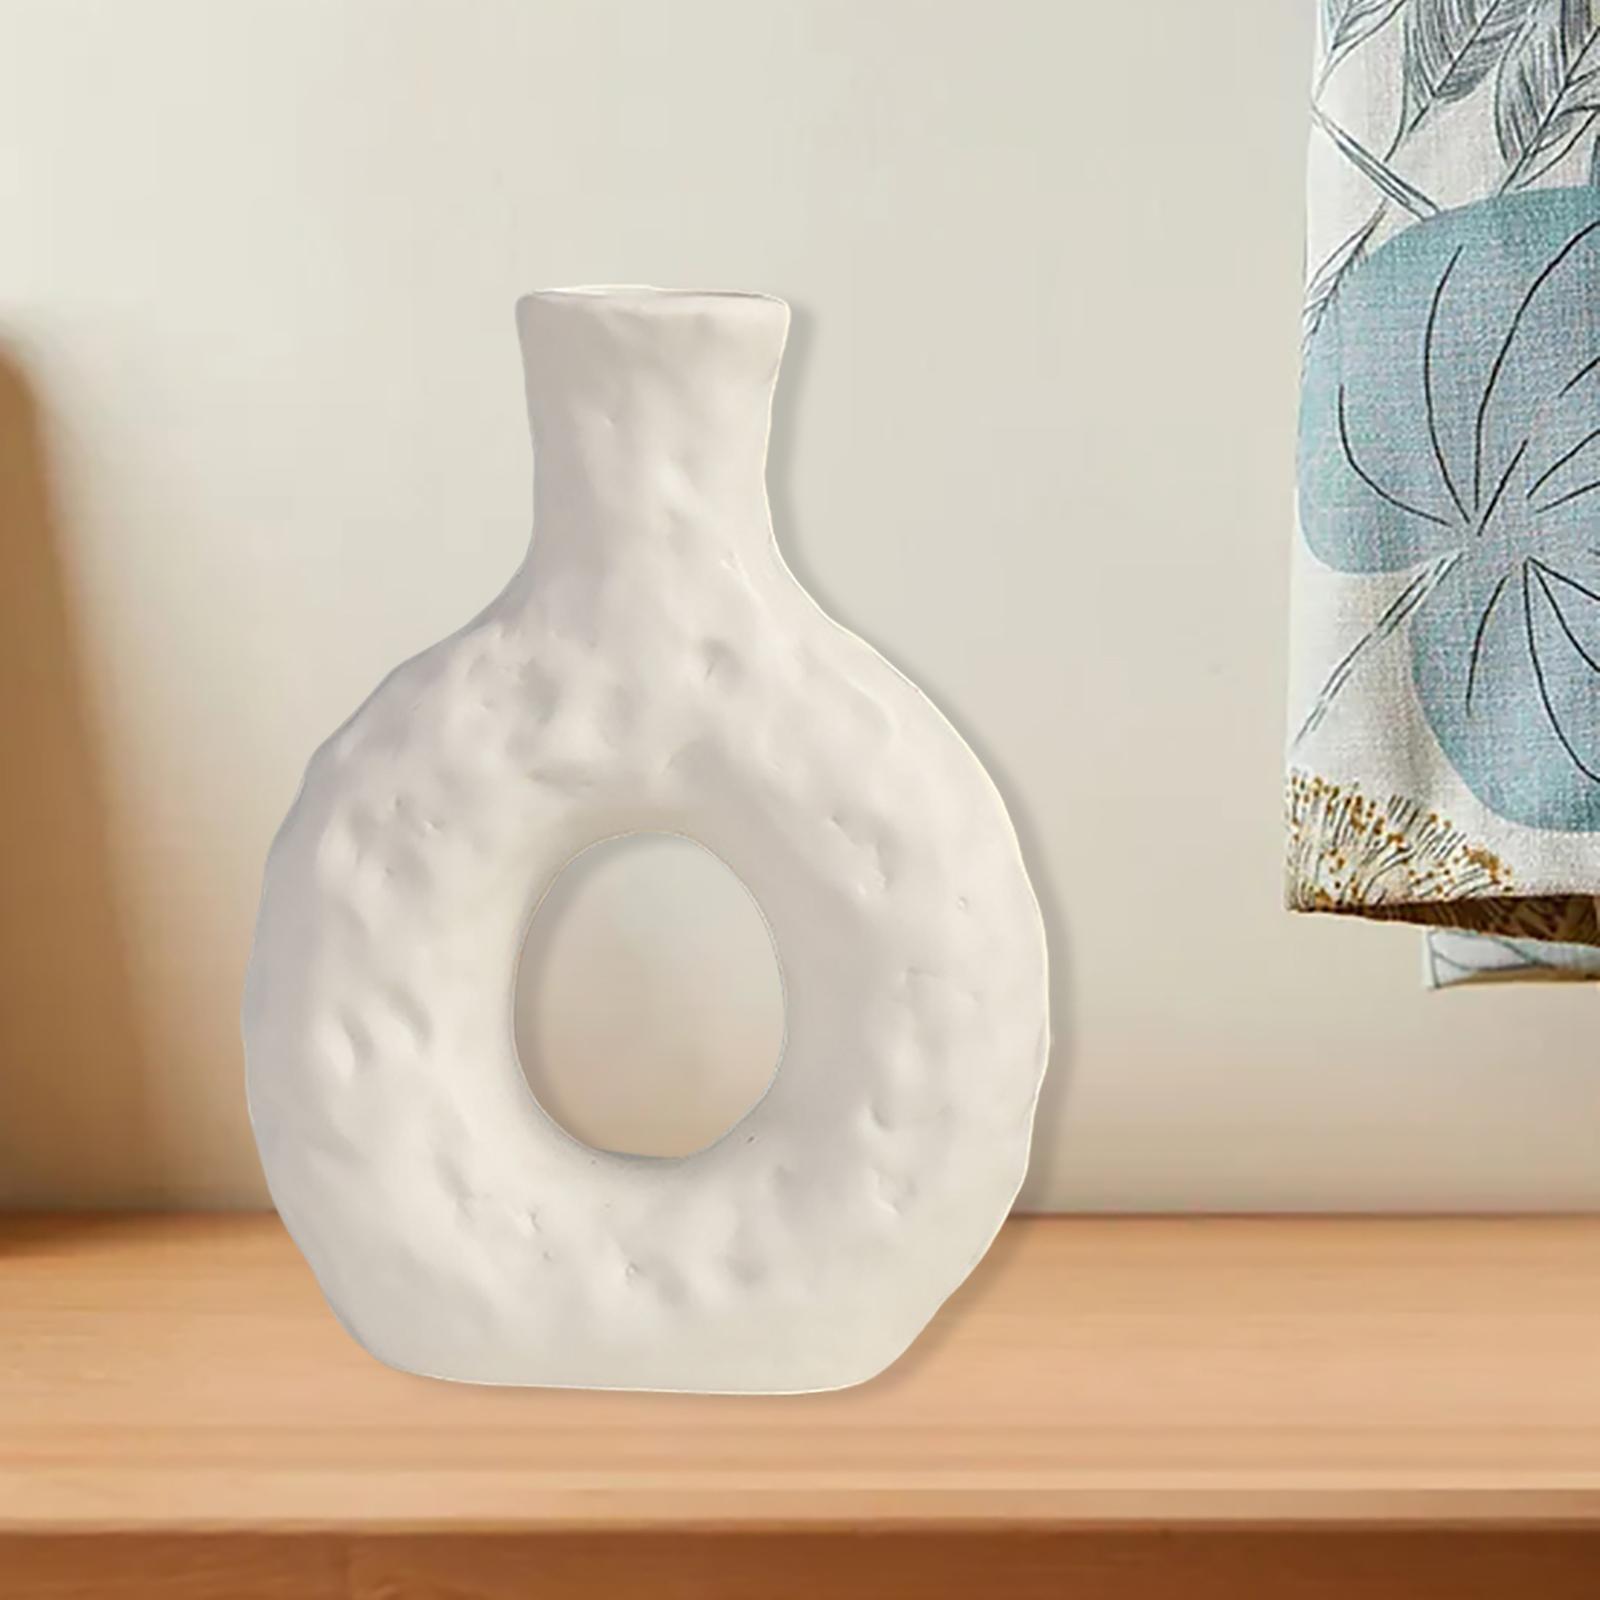 Modern Ceramic Vase Art Crafts Dry Flower Vase for Home Bedroom Garden White